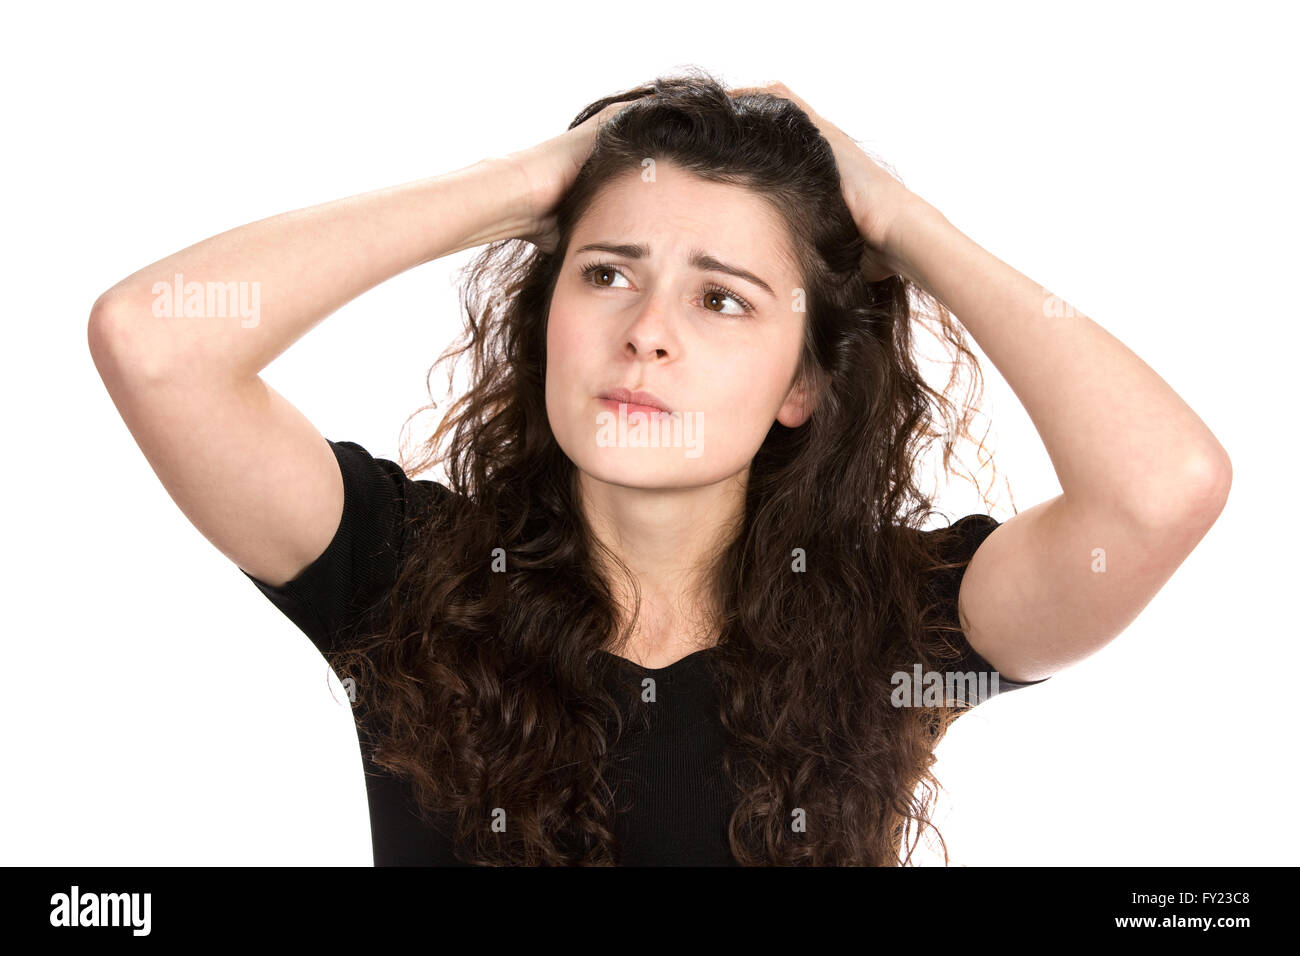 Junge Geschäftsfrau hält ihren Kopf, verzweifelt, wütend und ängstlich Umgang mit einer ernsten Situation fühlen. Stockfoto